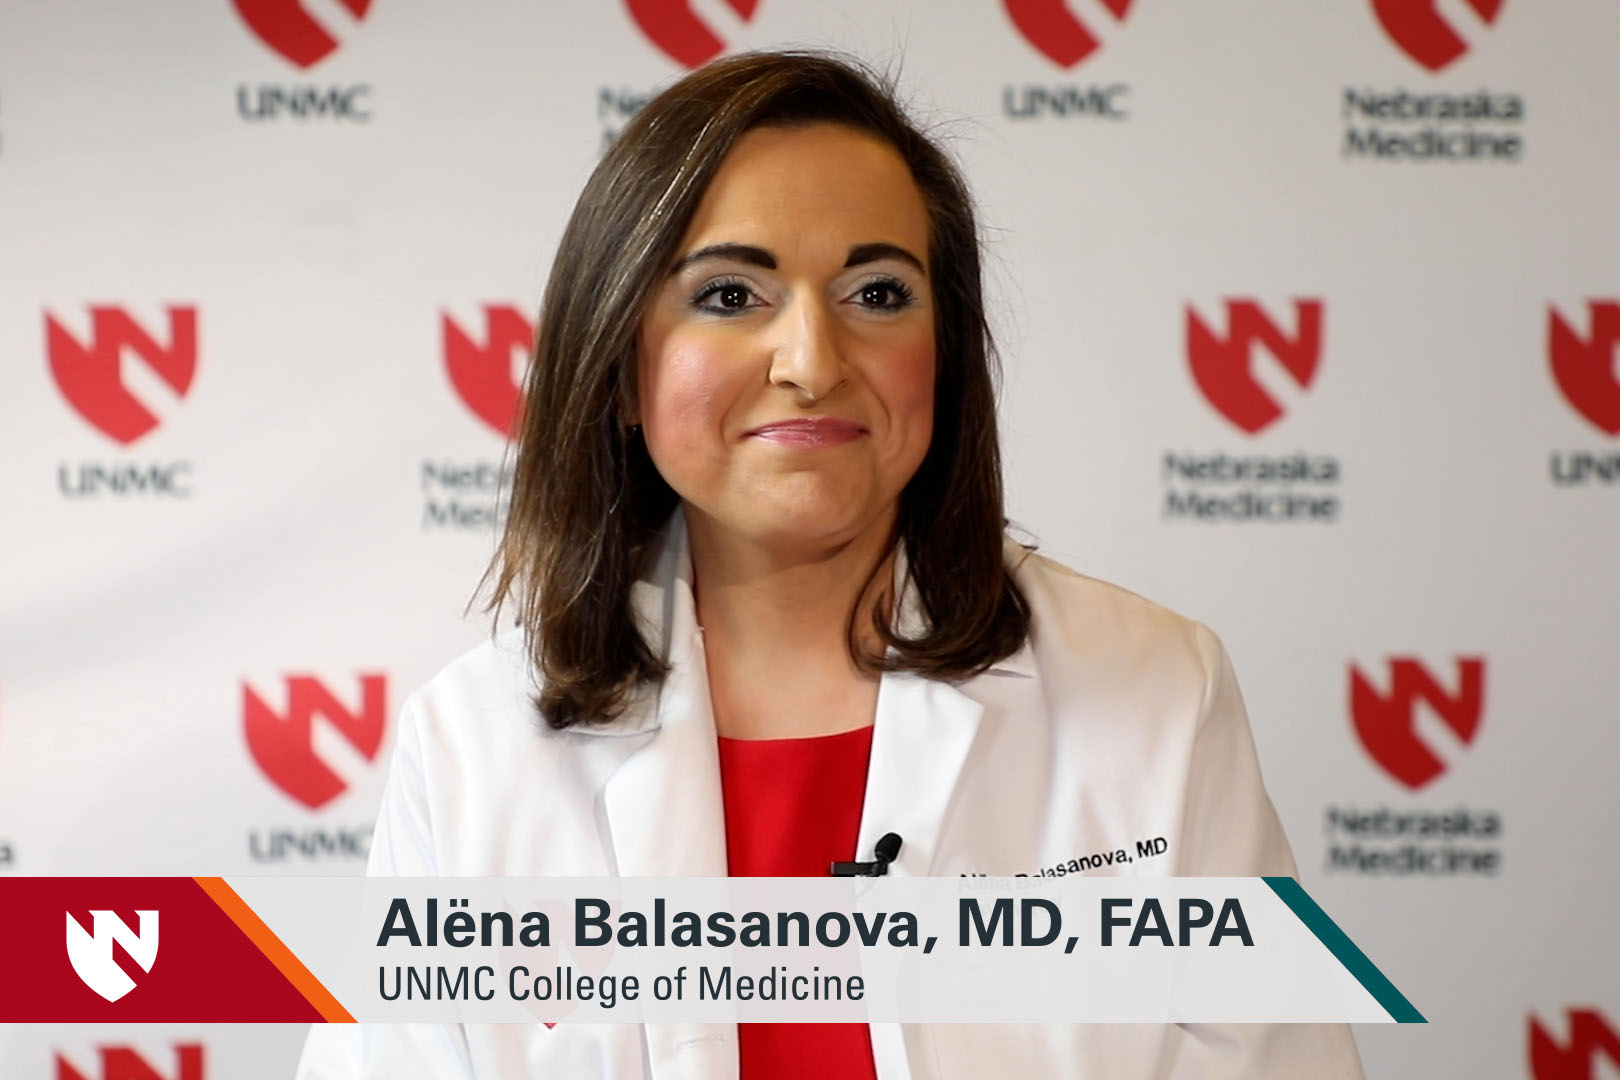 ASK UNMC! Alëna Balasanova, MD, FAPA, UNMC College of Medicine